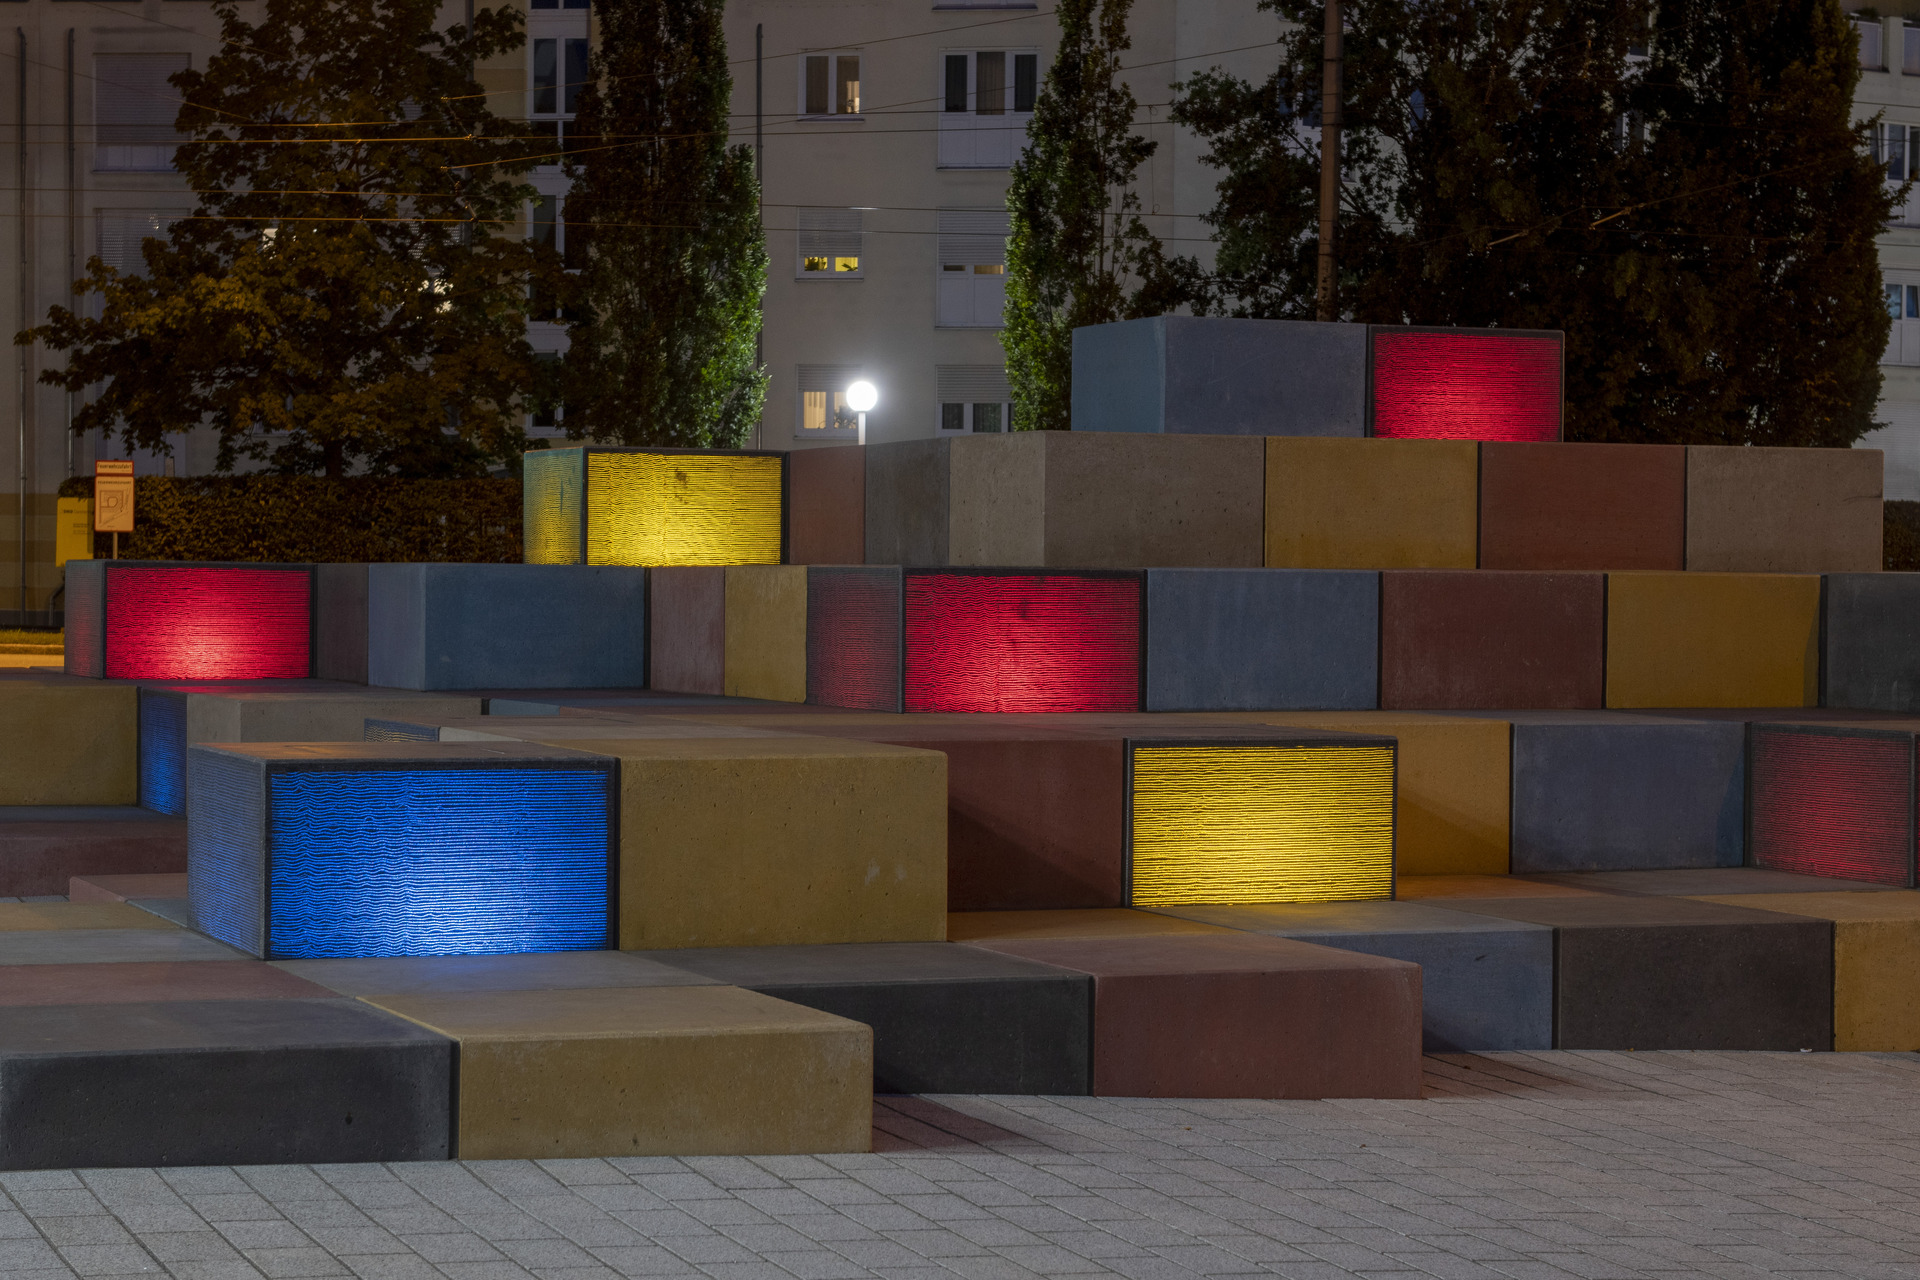 Öffentlicher Platz in Augusburg, Deutschland, bestehend aus Beton-Kuben eingefärbt mit Bayferrox Pigmenten